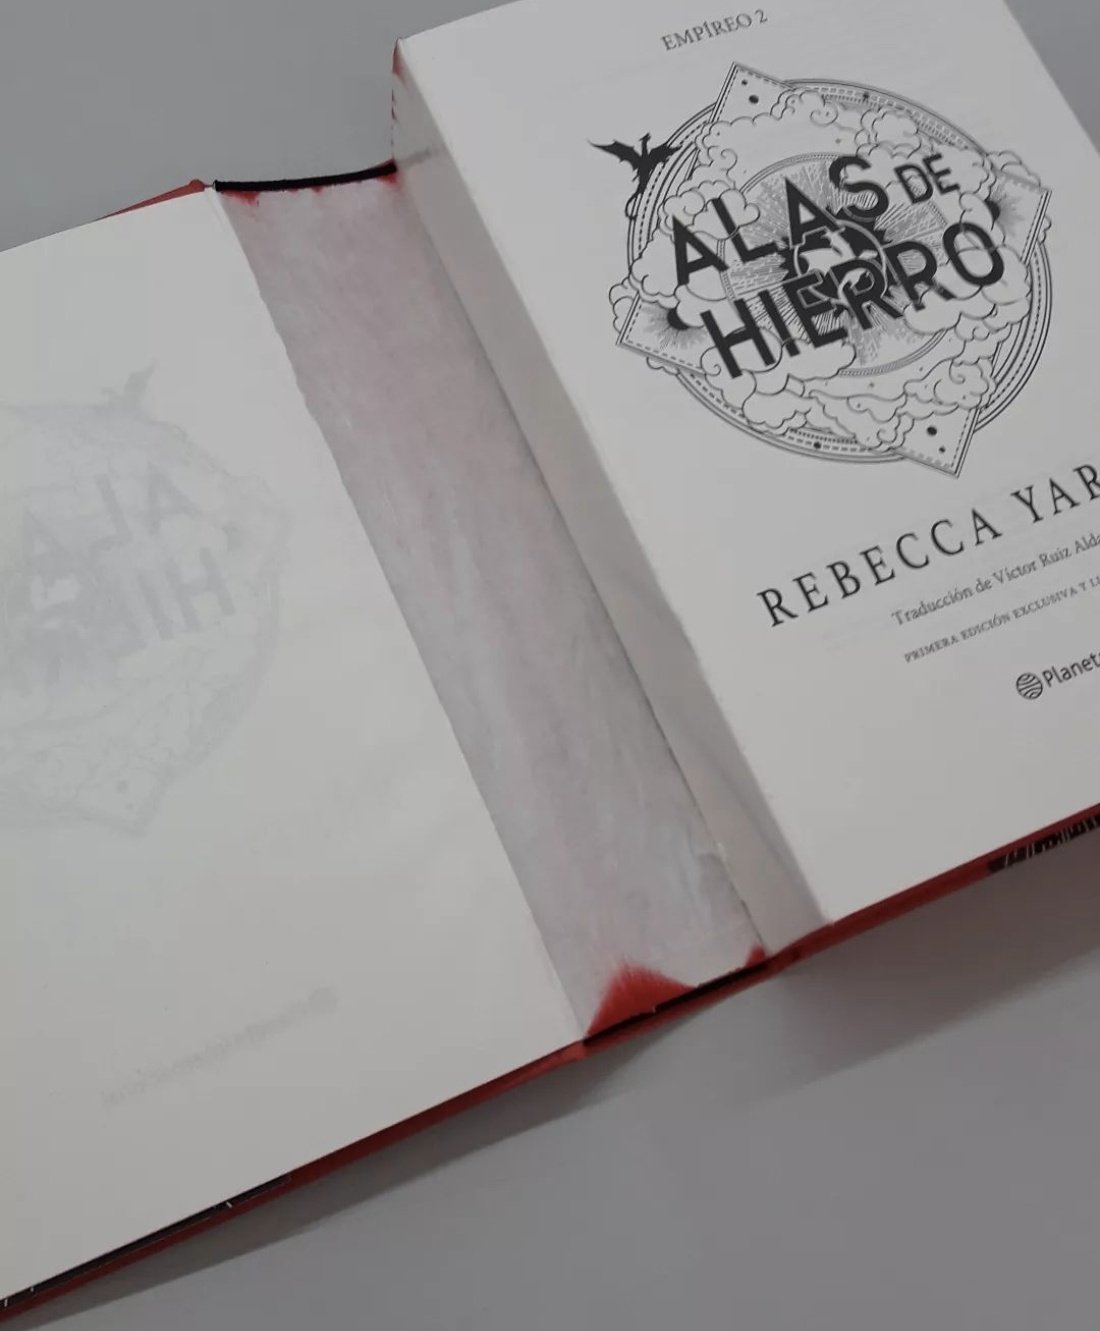 ALAS DE HIERRO (EMPIREO 2), REBECCA YARROS, Editorial Planeta